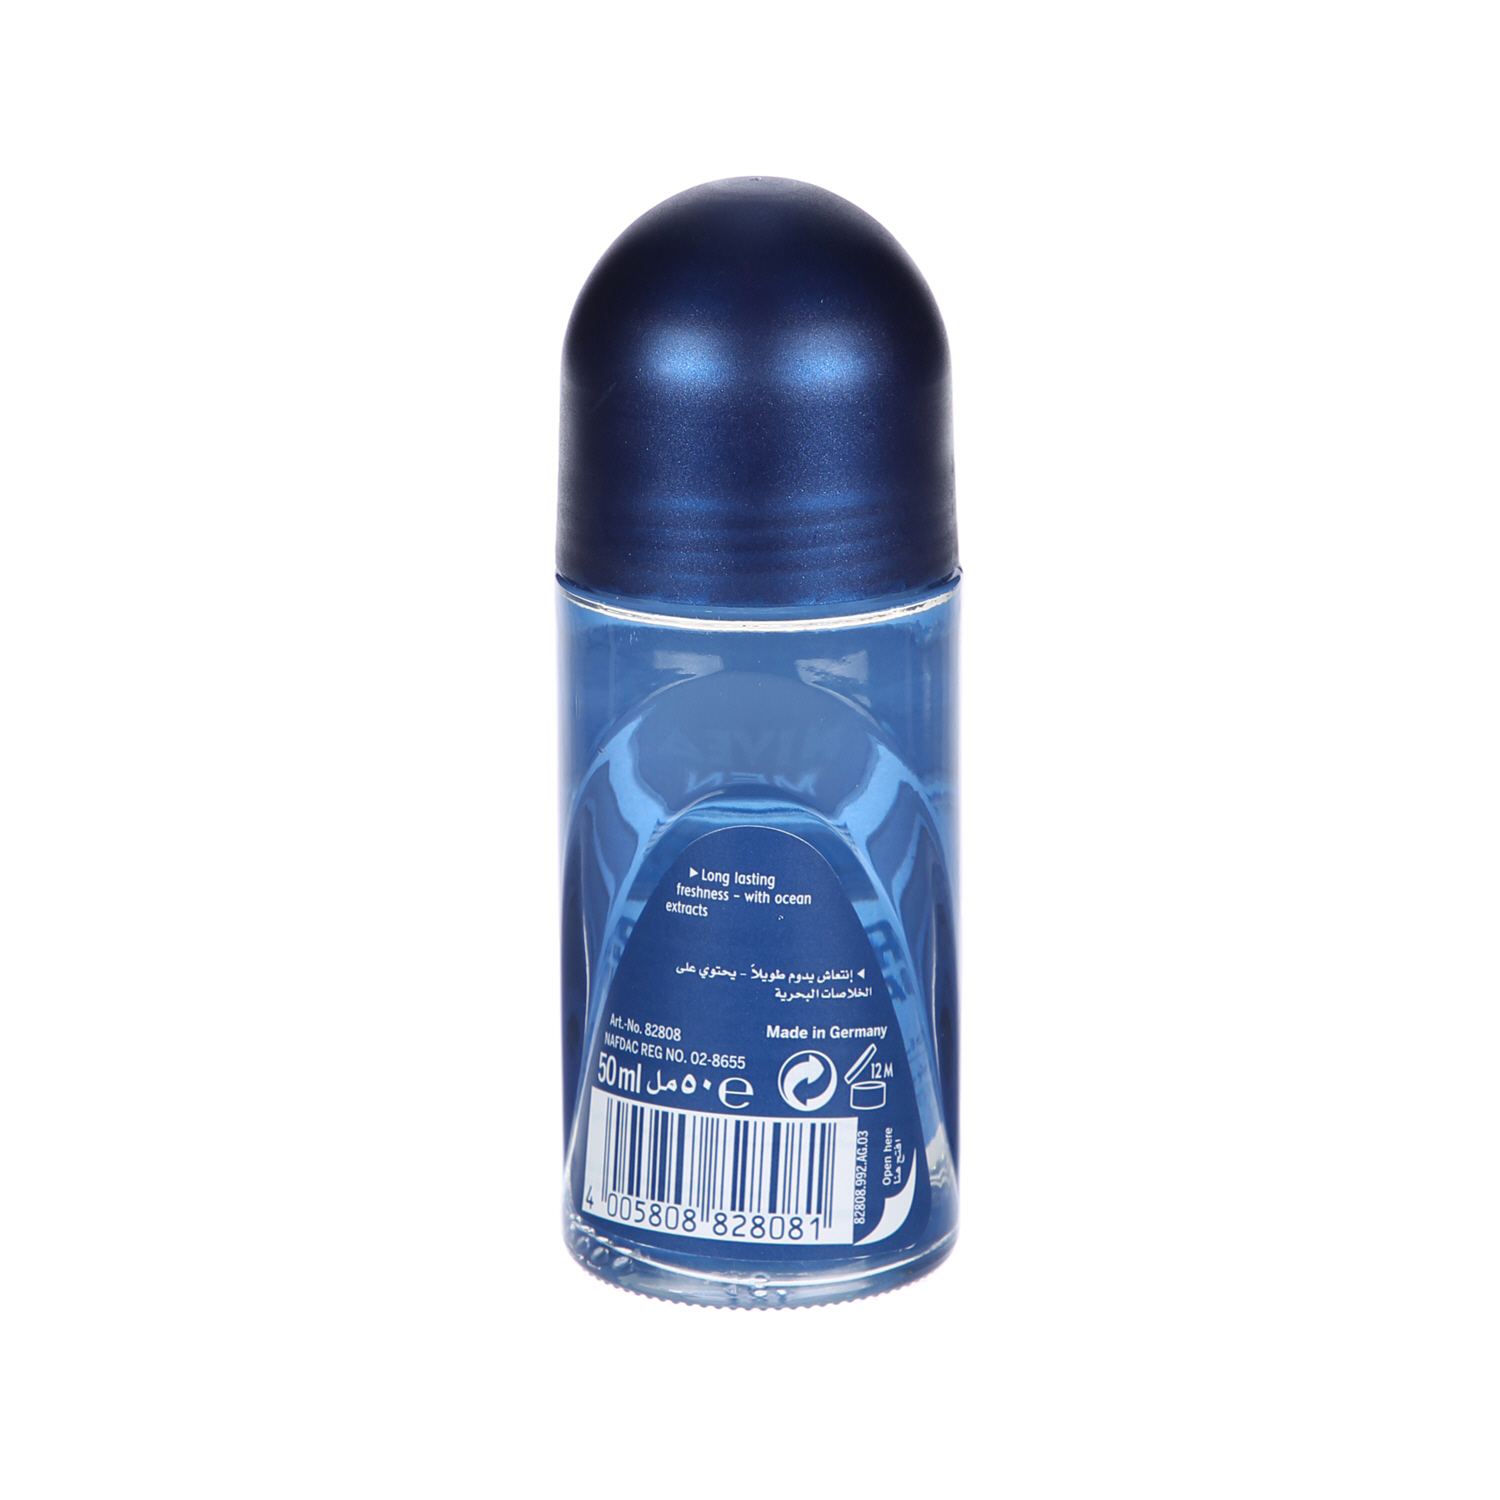 Nivea Men Antiperspirant Roll-on for Men Fresh Active Fresh Scent 50 ml